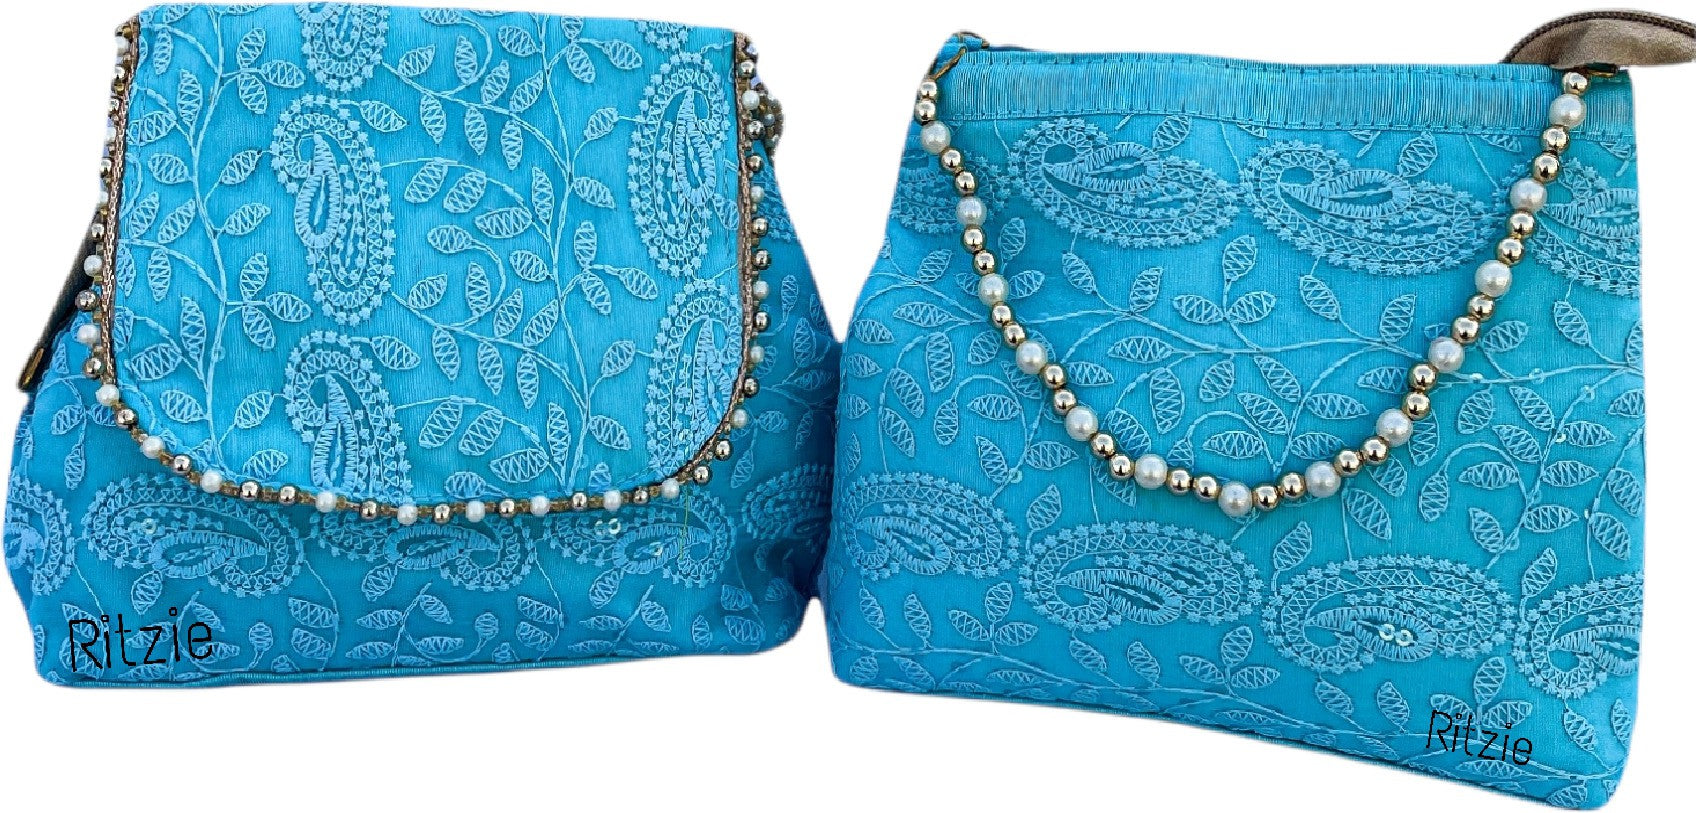 Buy Motiwale Girls White Handbag Cream Online @ Best Price in India |  Flipkart.com